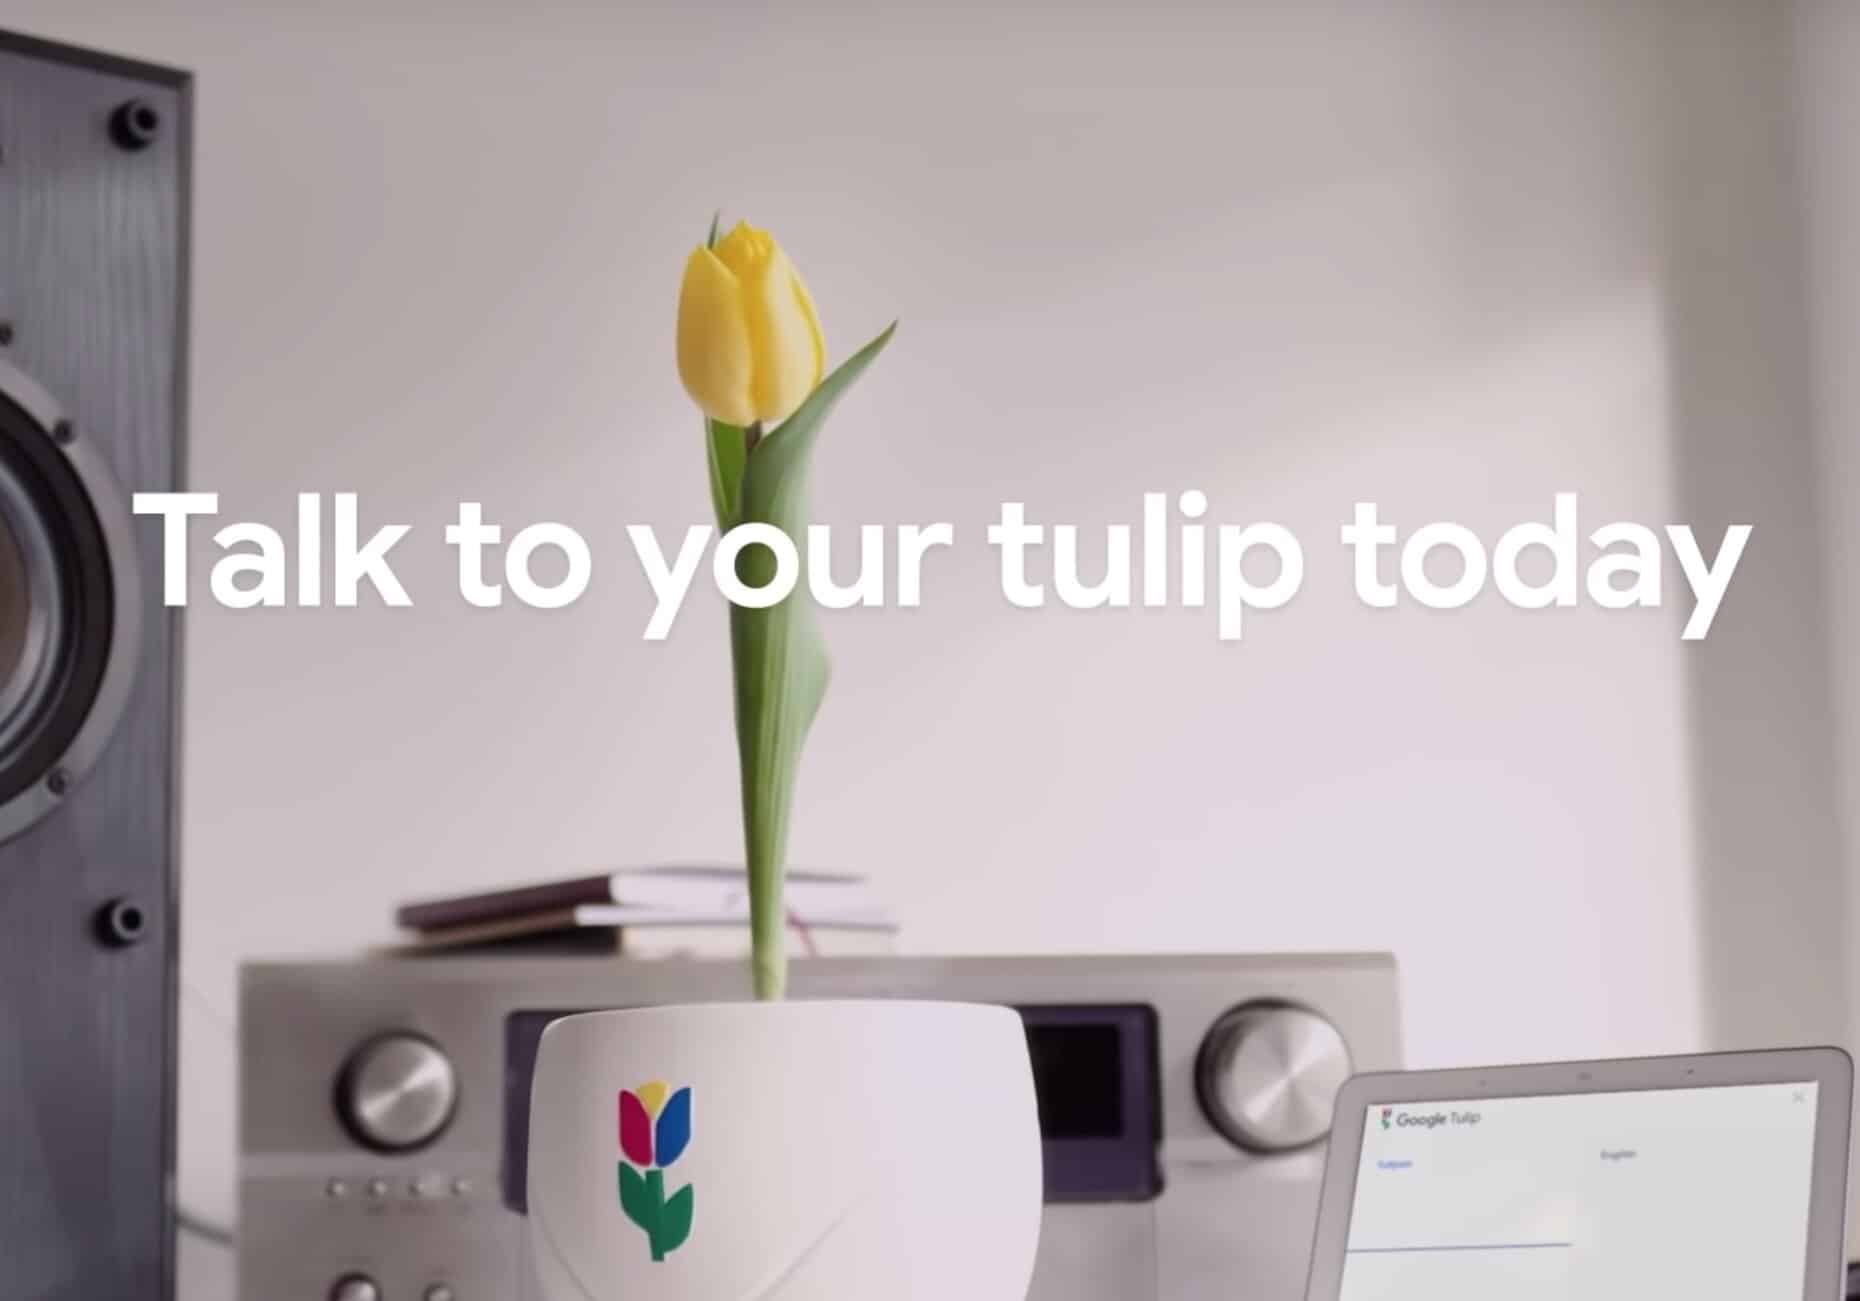 Google Tulip poisson d'avril